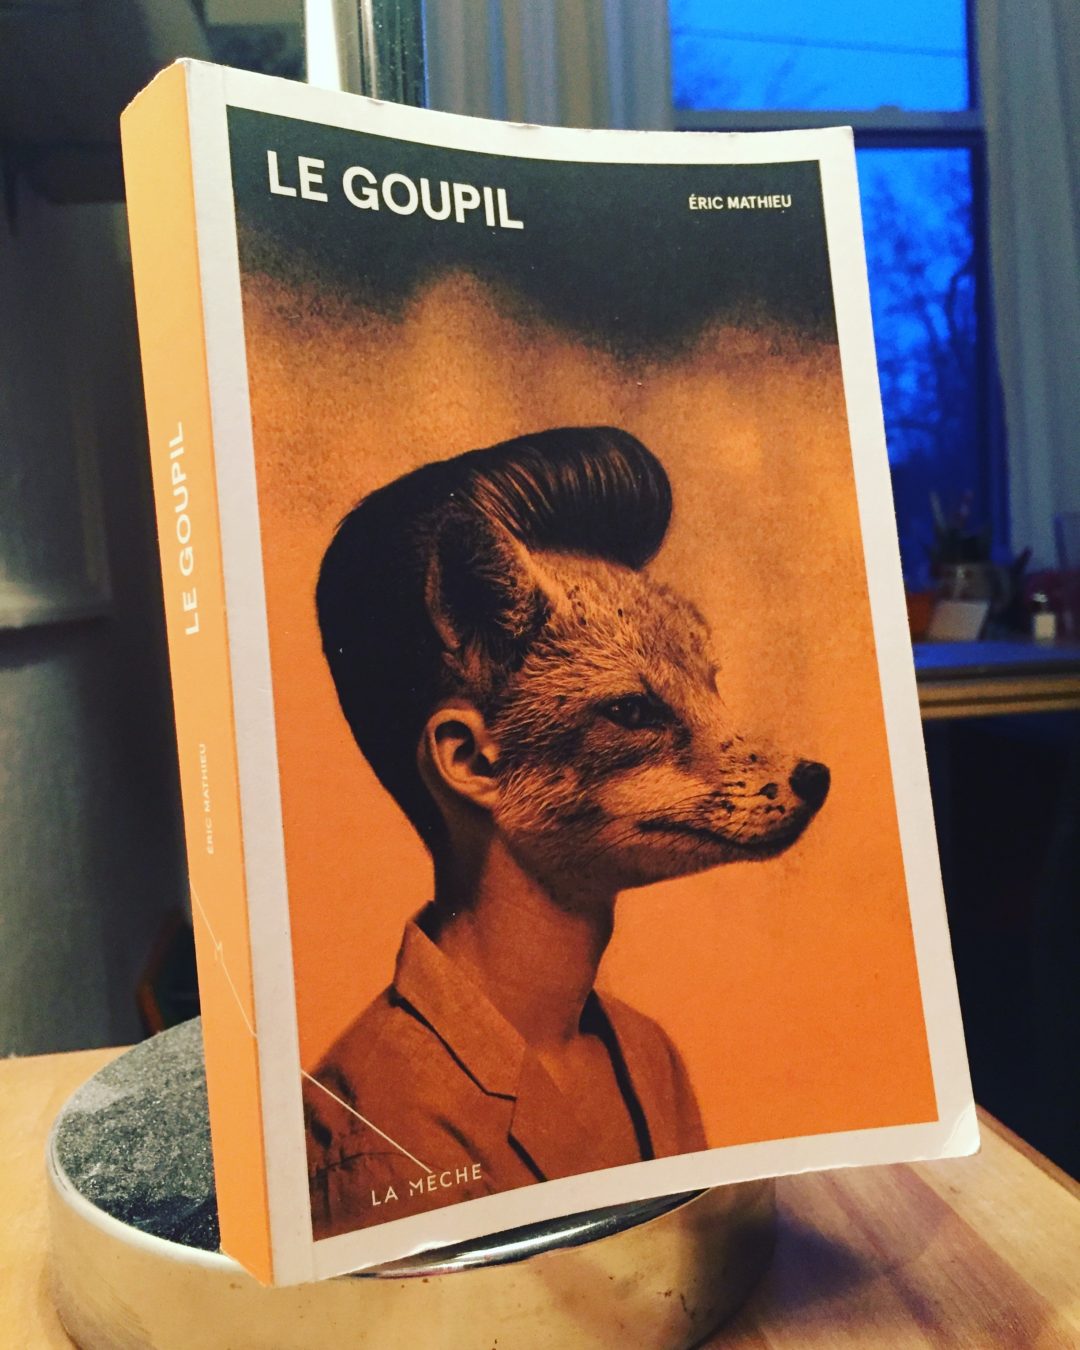 Le Goupil